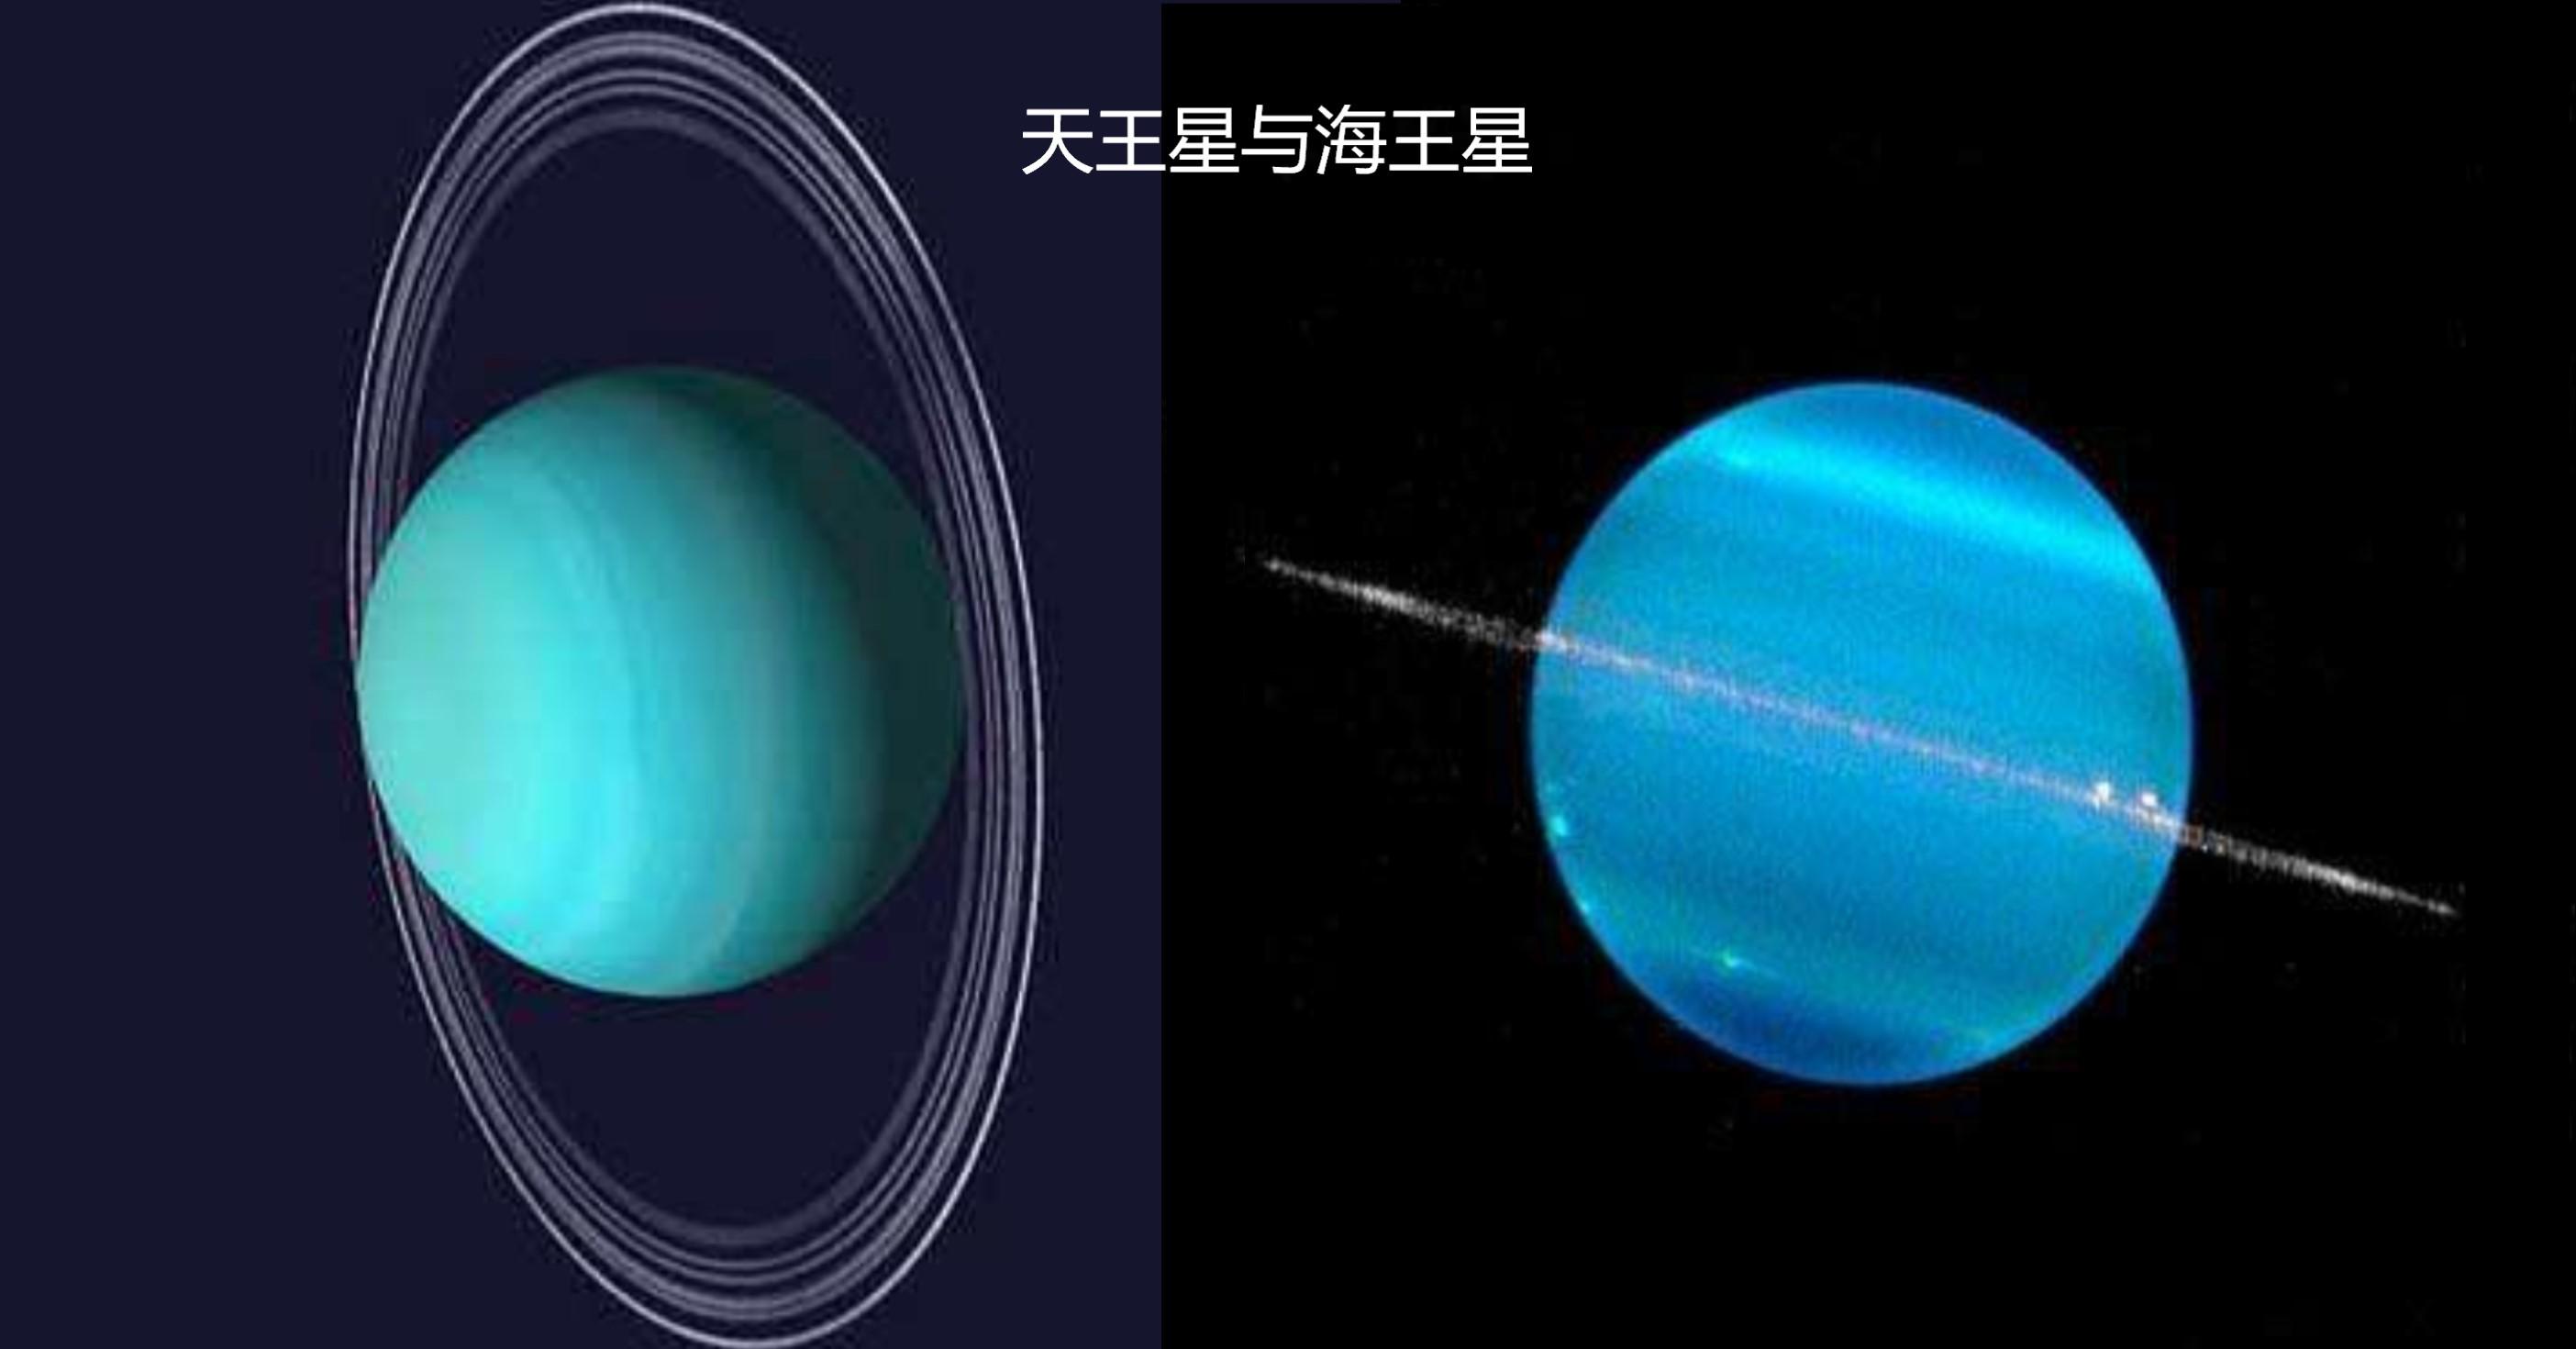 天王星和海王星虽然看似一对姊妹星 但还是有区别 知乎